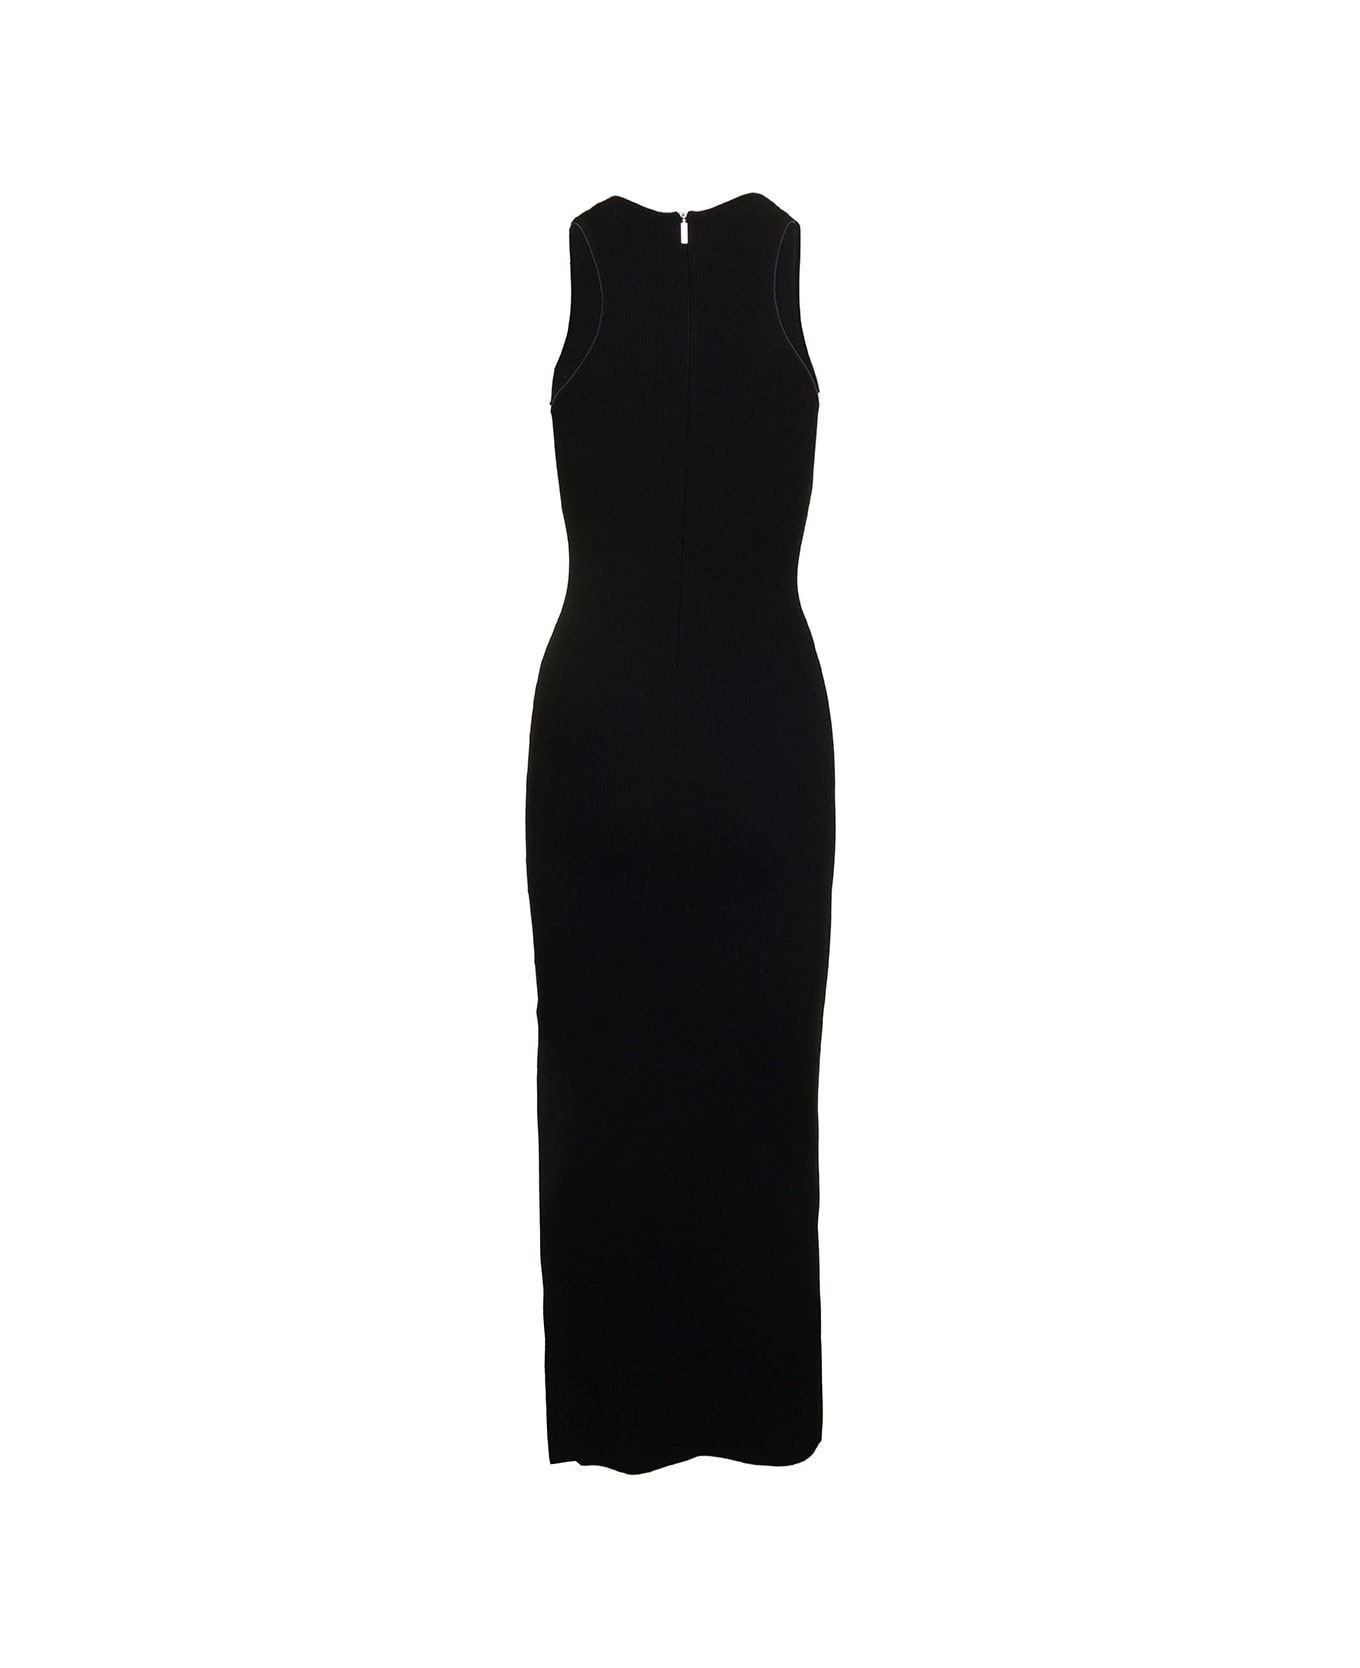 Michael Kors Tank Side Slit Maxi Dress - Black